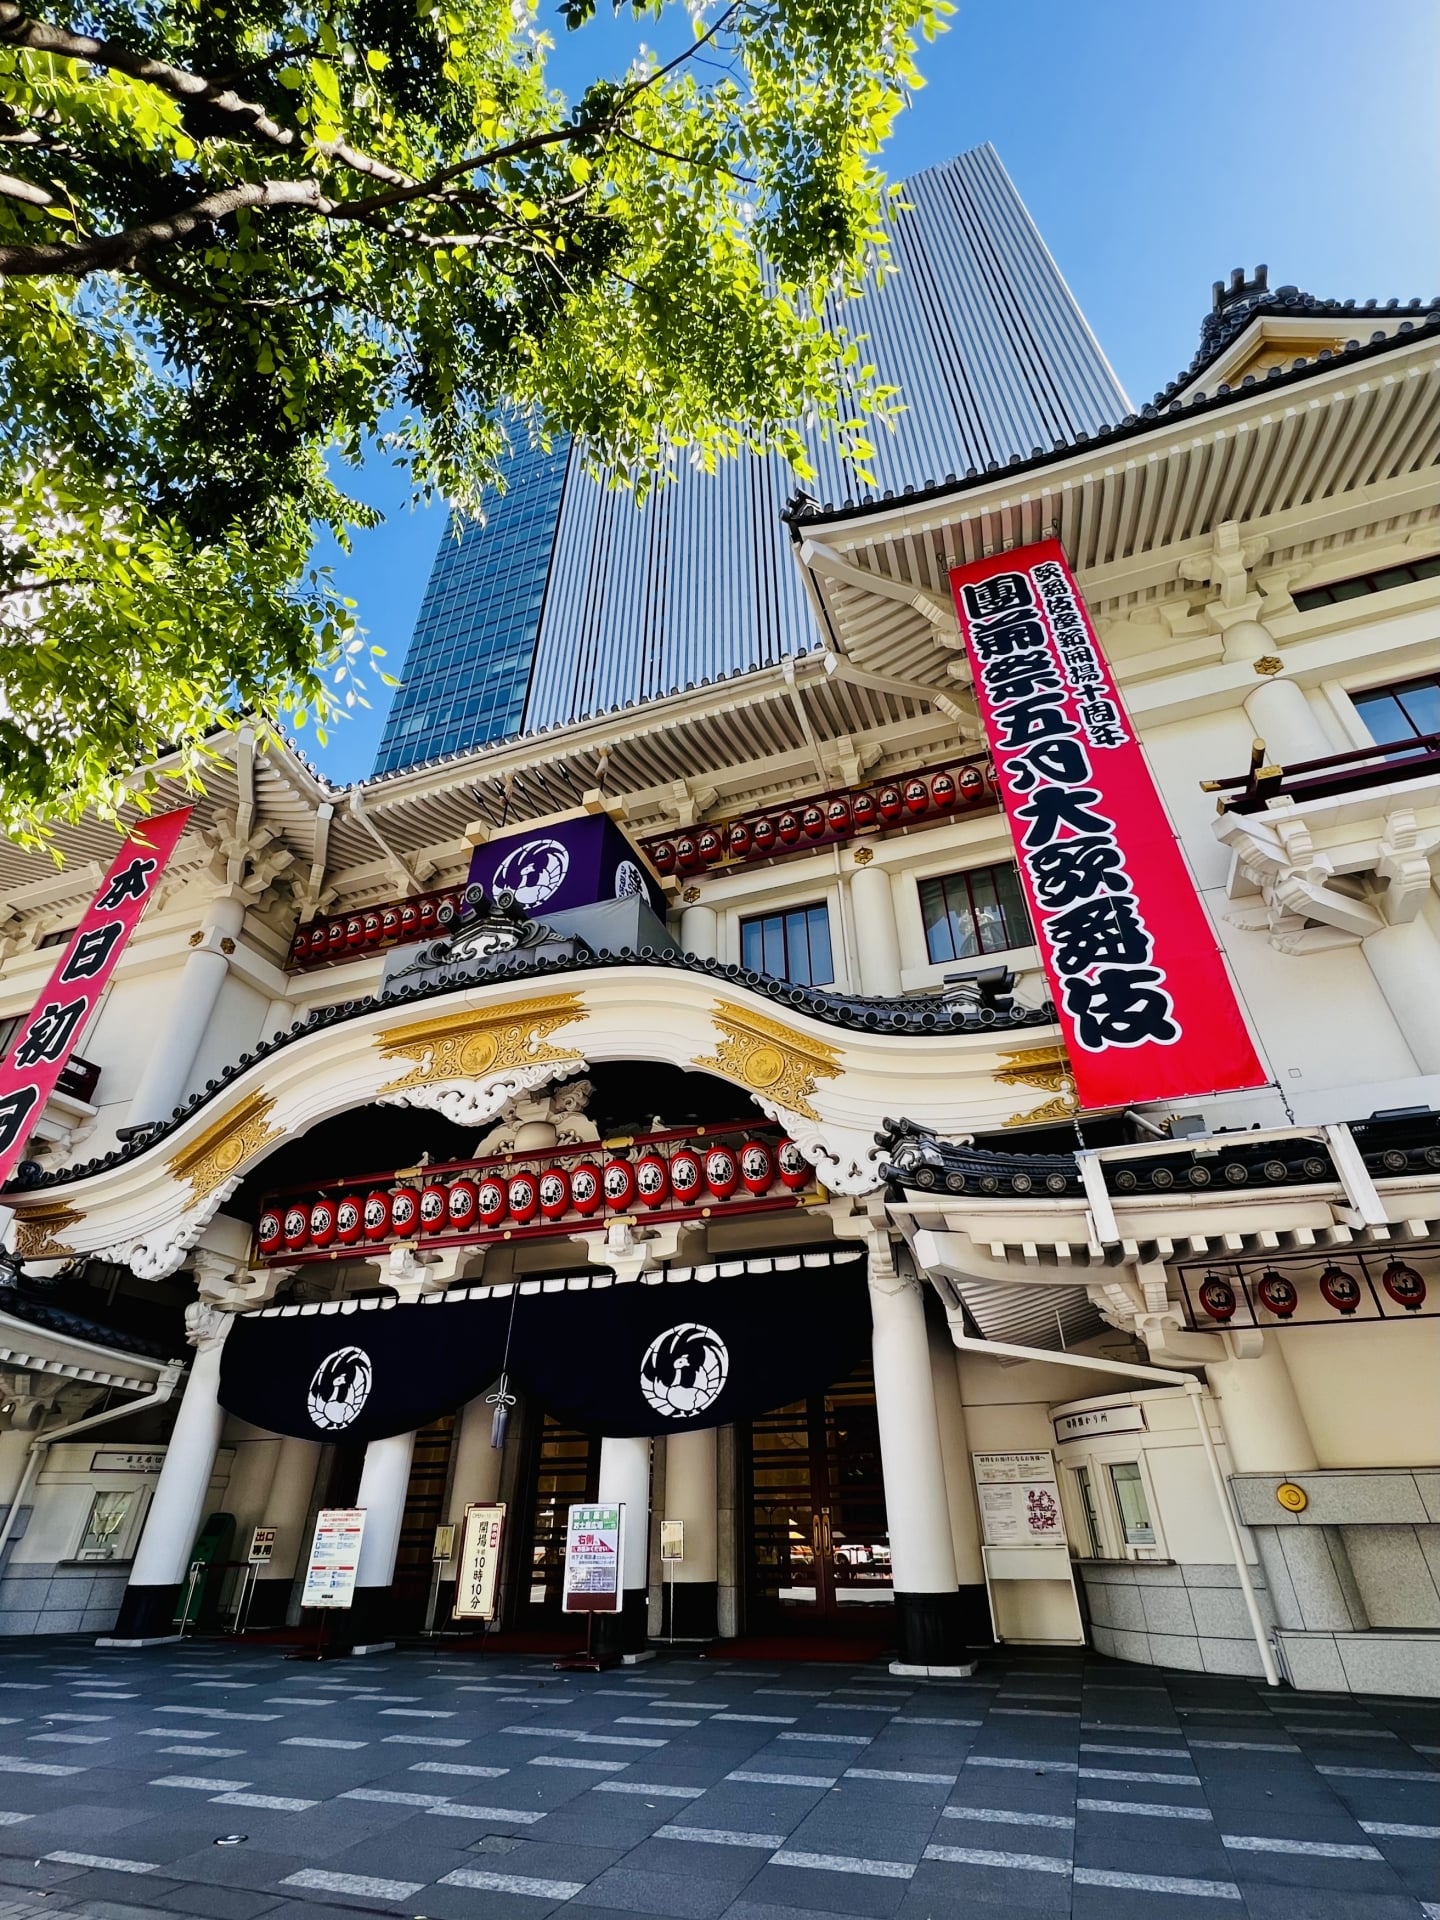 Visit the Kabuki-za Theatre